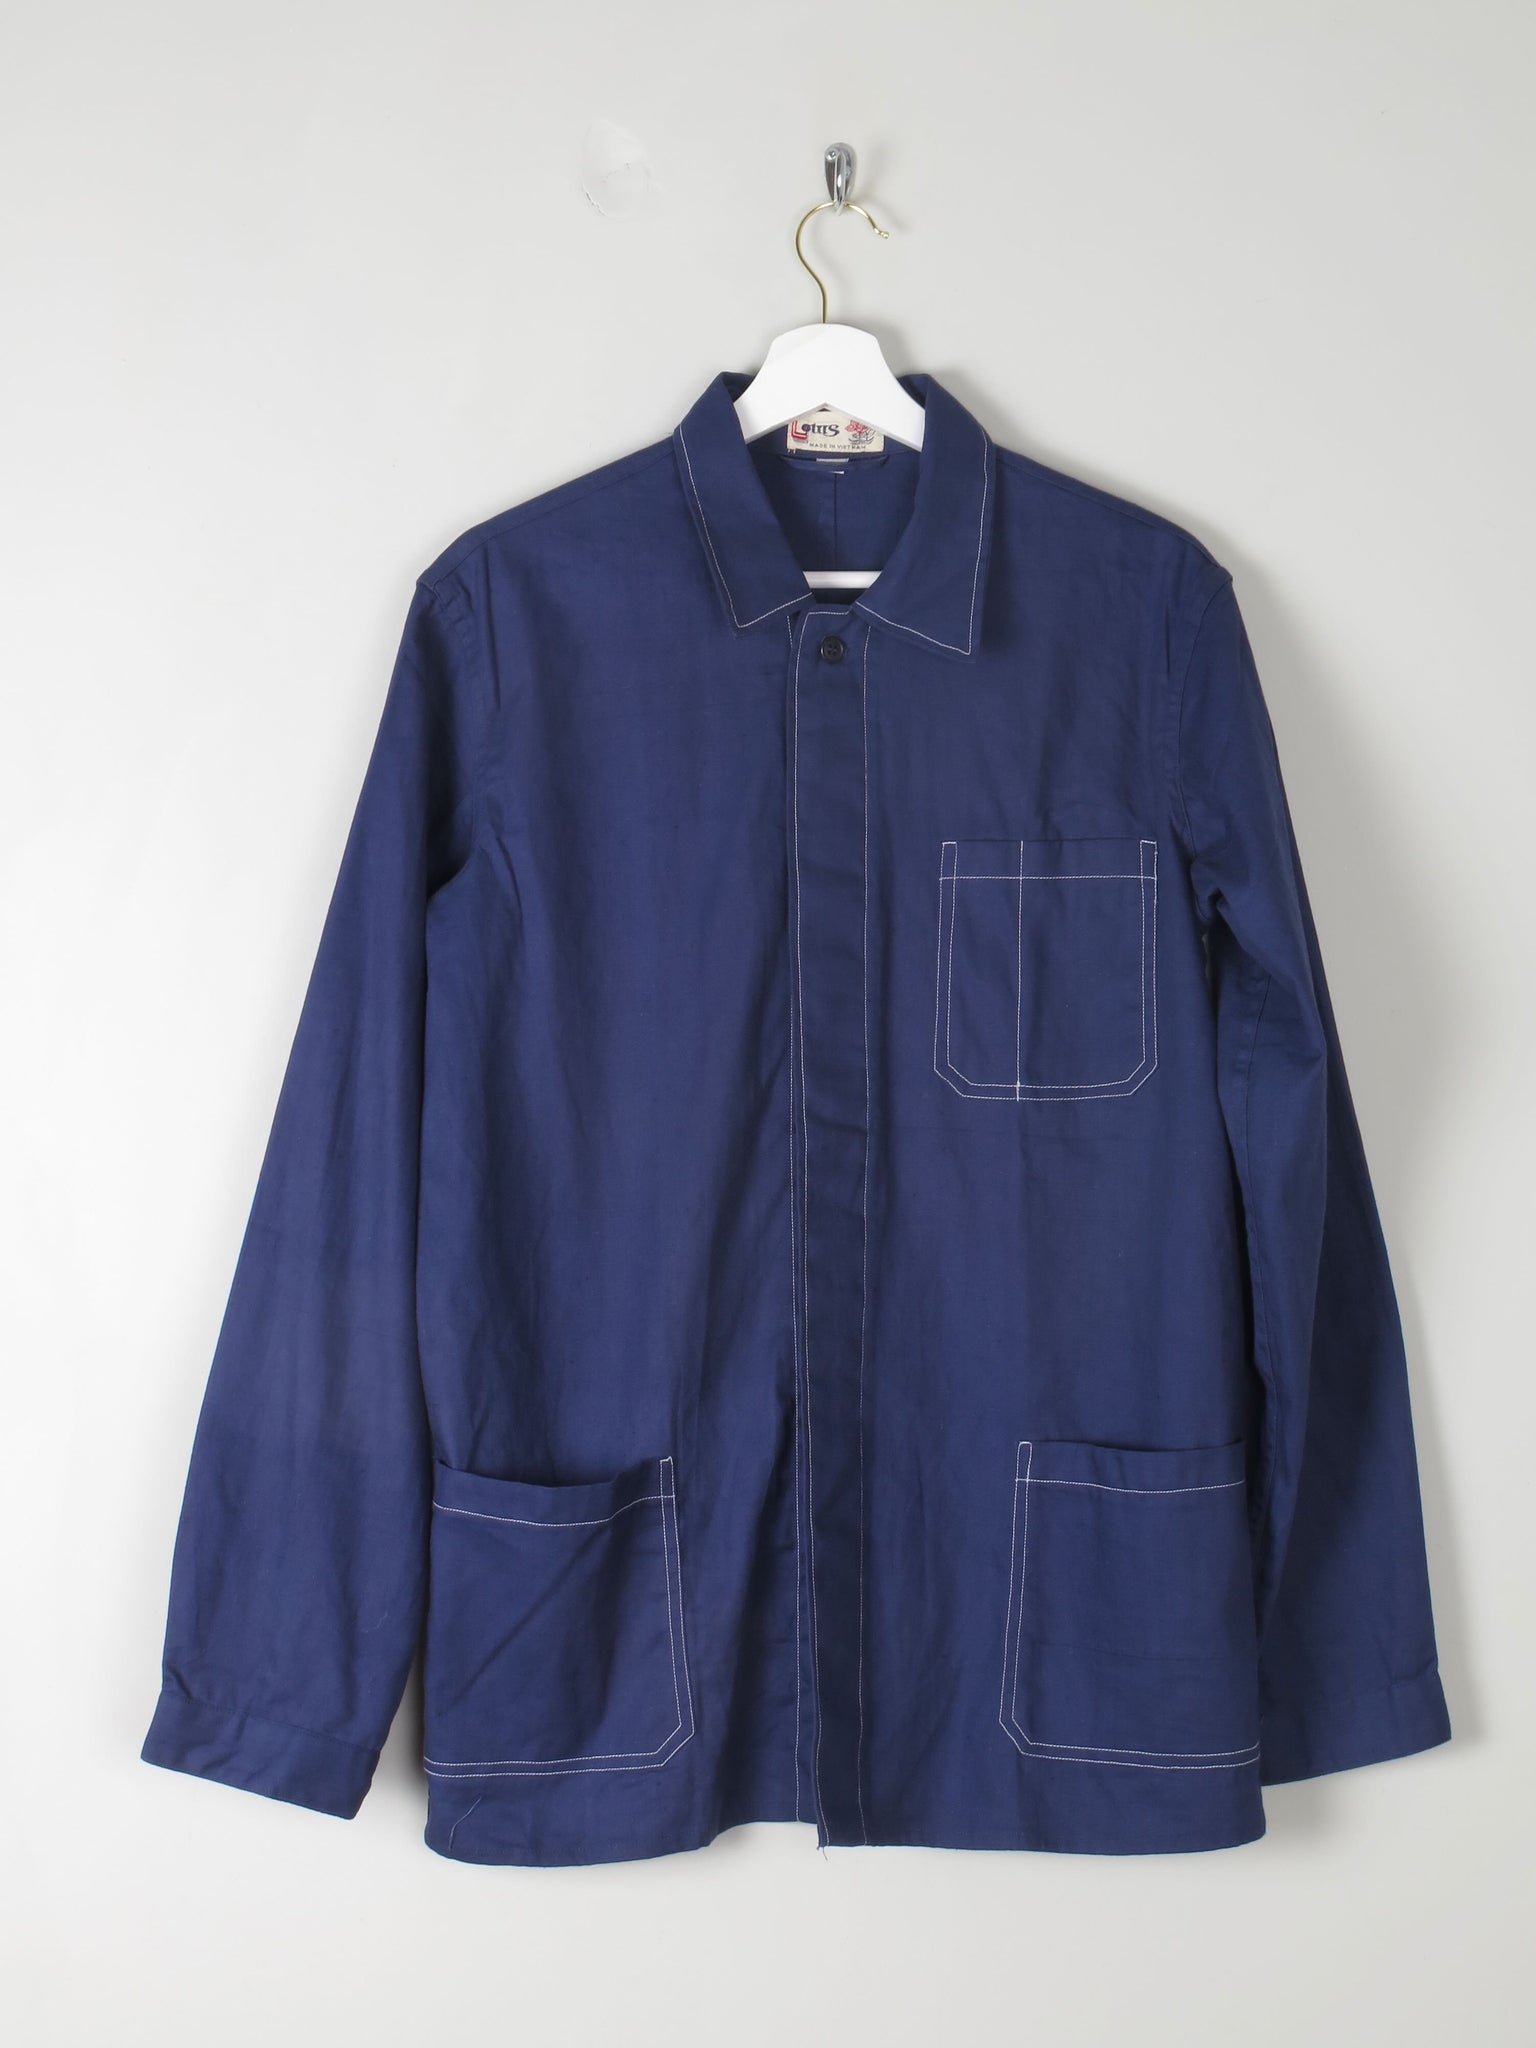 Men's Indigo Blue Work Jacket S/M